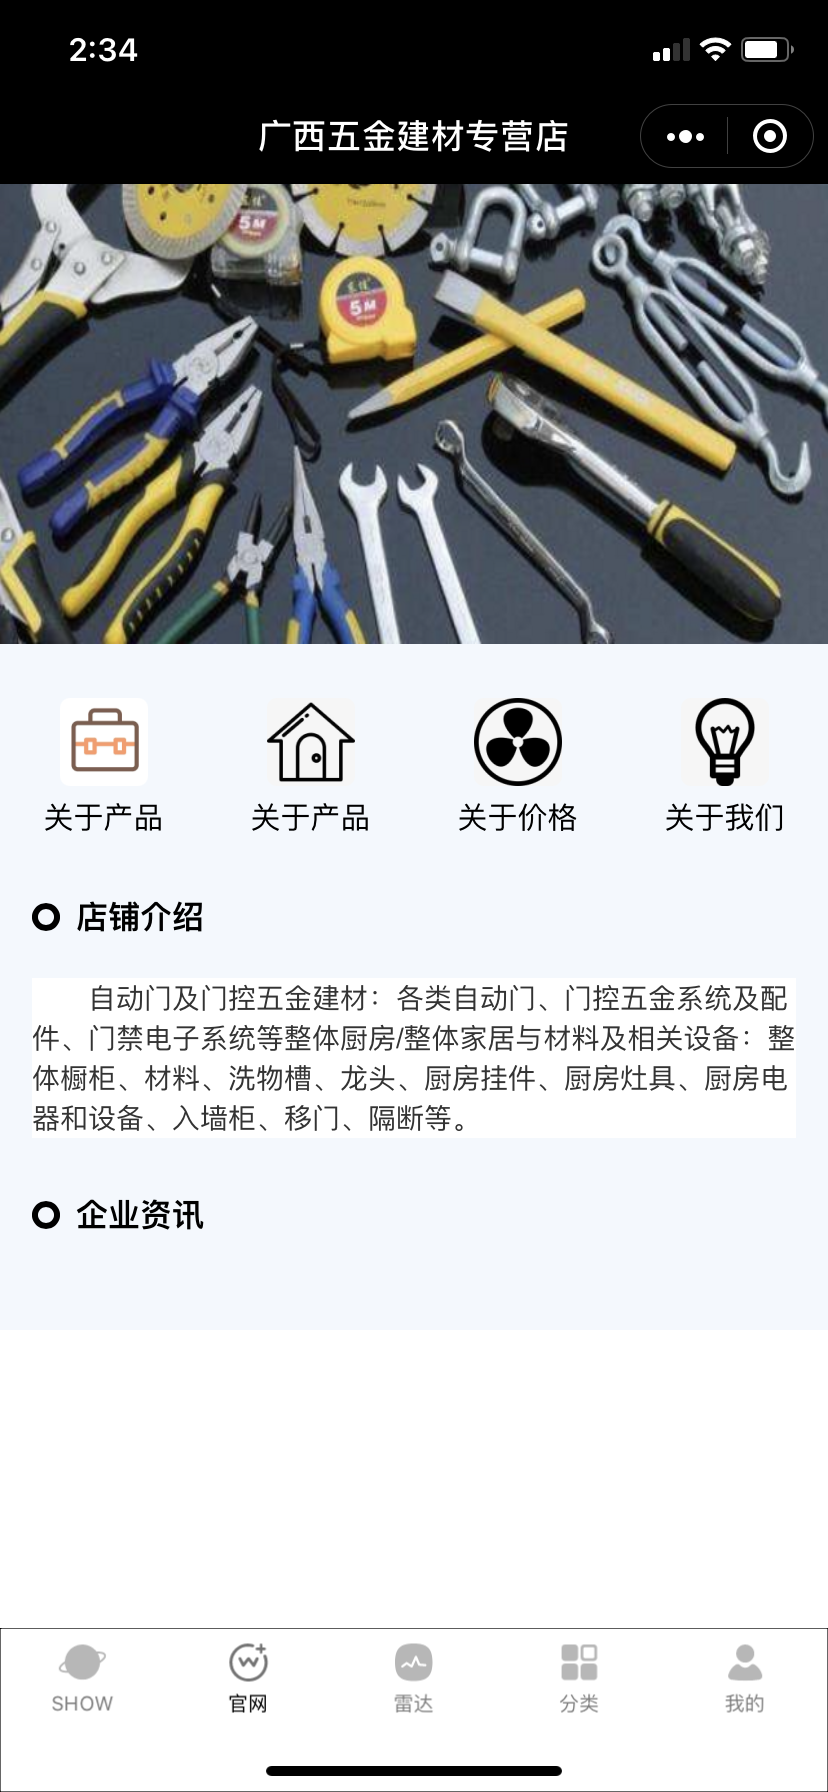 广西五金建材整合行业招商运营资源的专业平台-衡水热线网